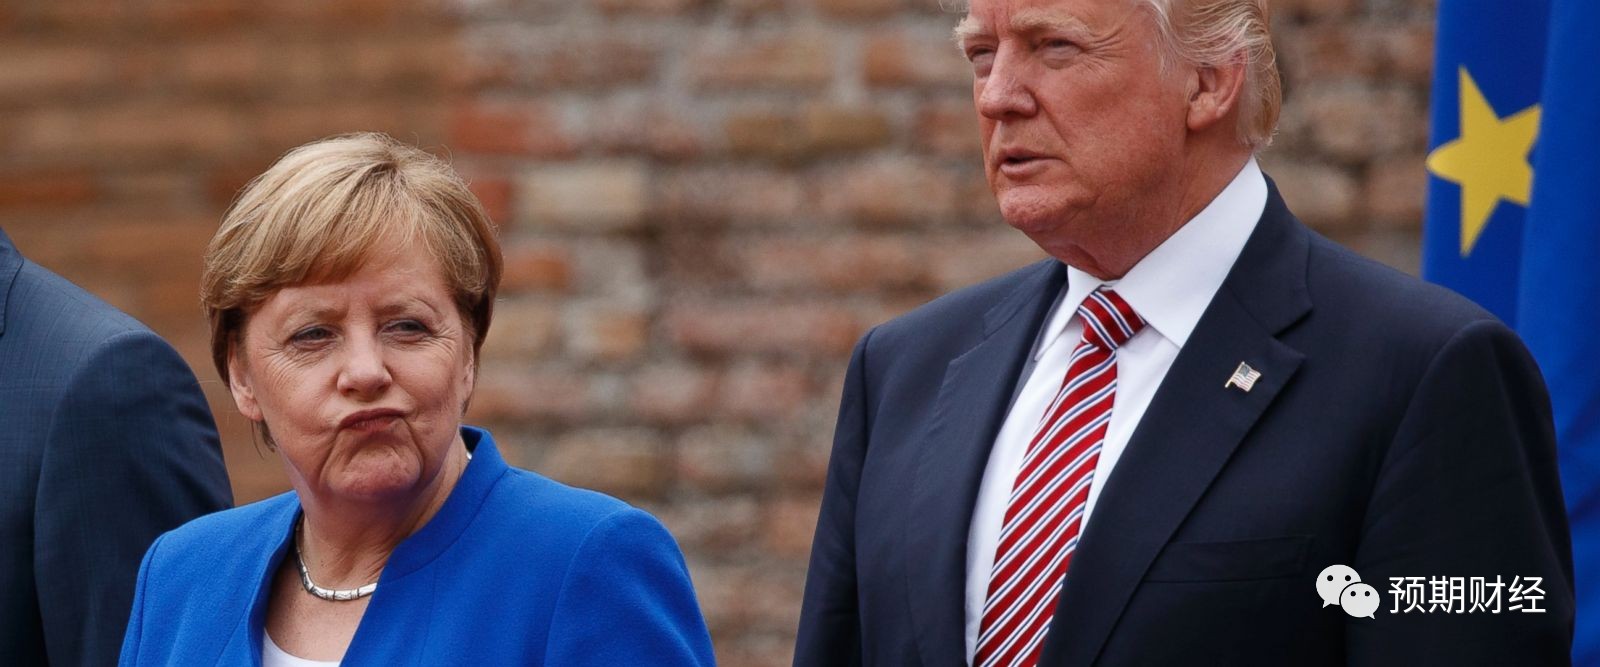 特朗普为何盯上德国?贸易顺差2700亿美元占G